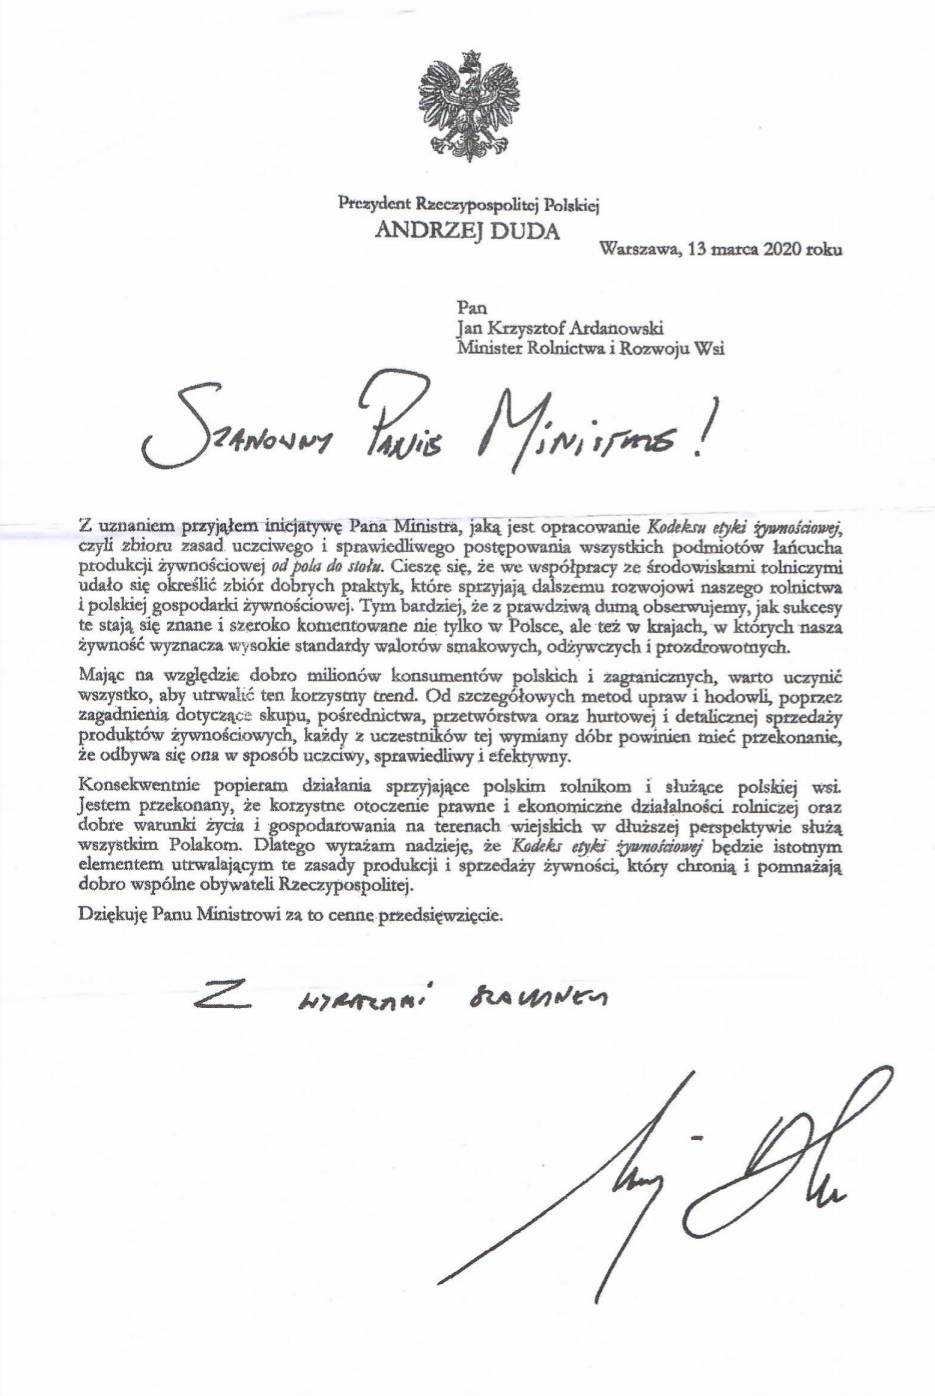 KRUS wraz z powiadomieniem o umorzeniu składek wysłał rolnikom list Andrzeja Dudy, w którym zapewnia, że leży mu na sercu dobro wsi i rolników.